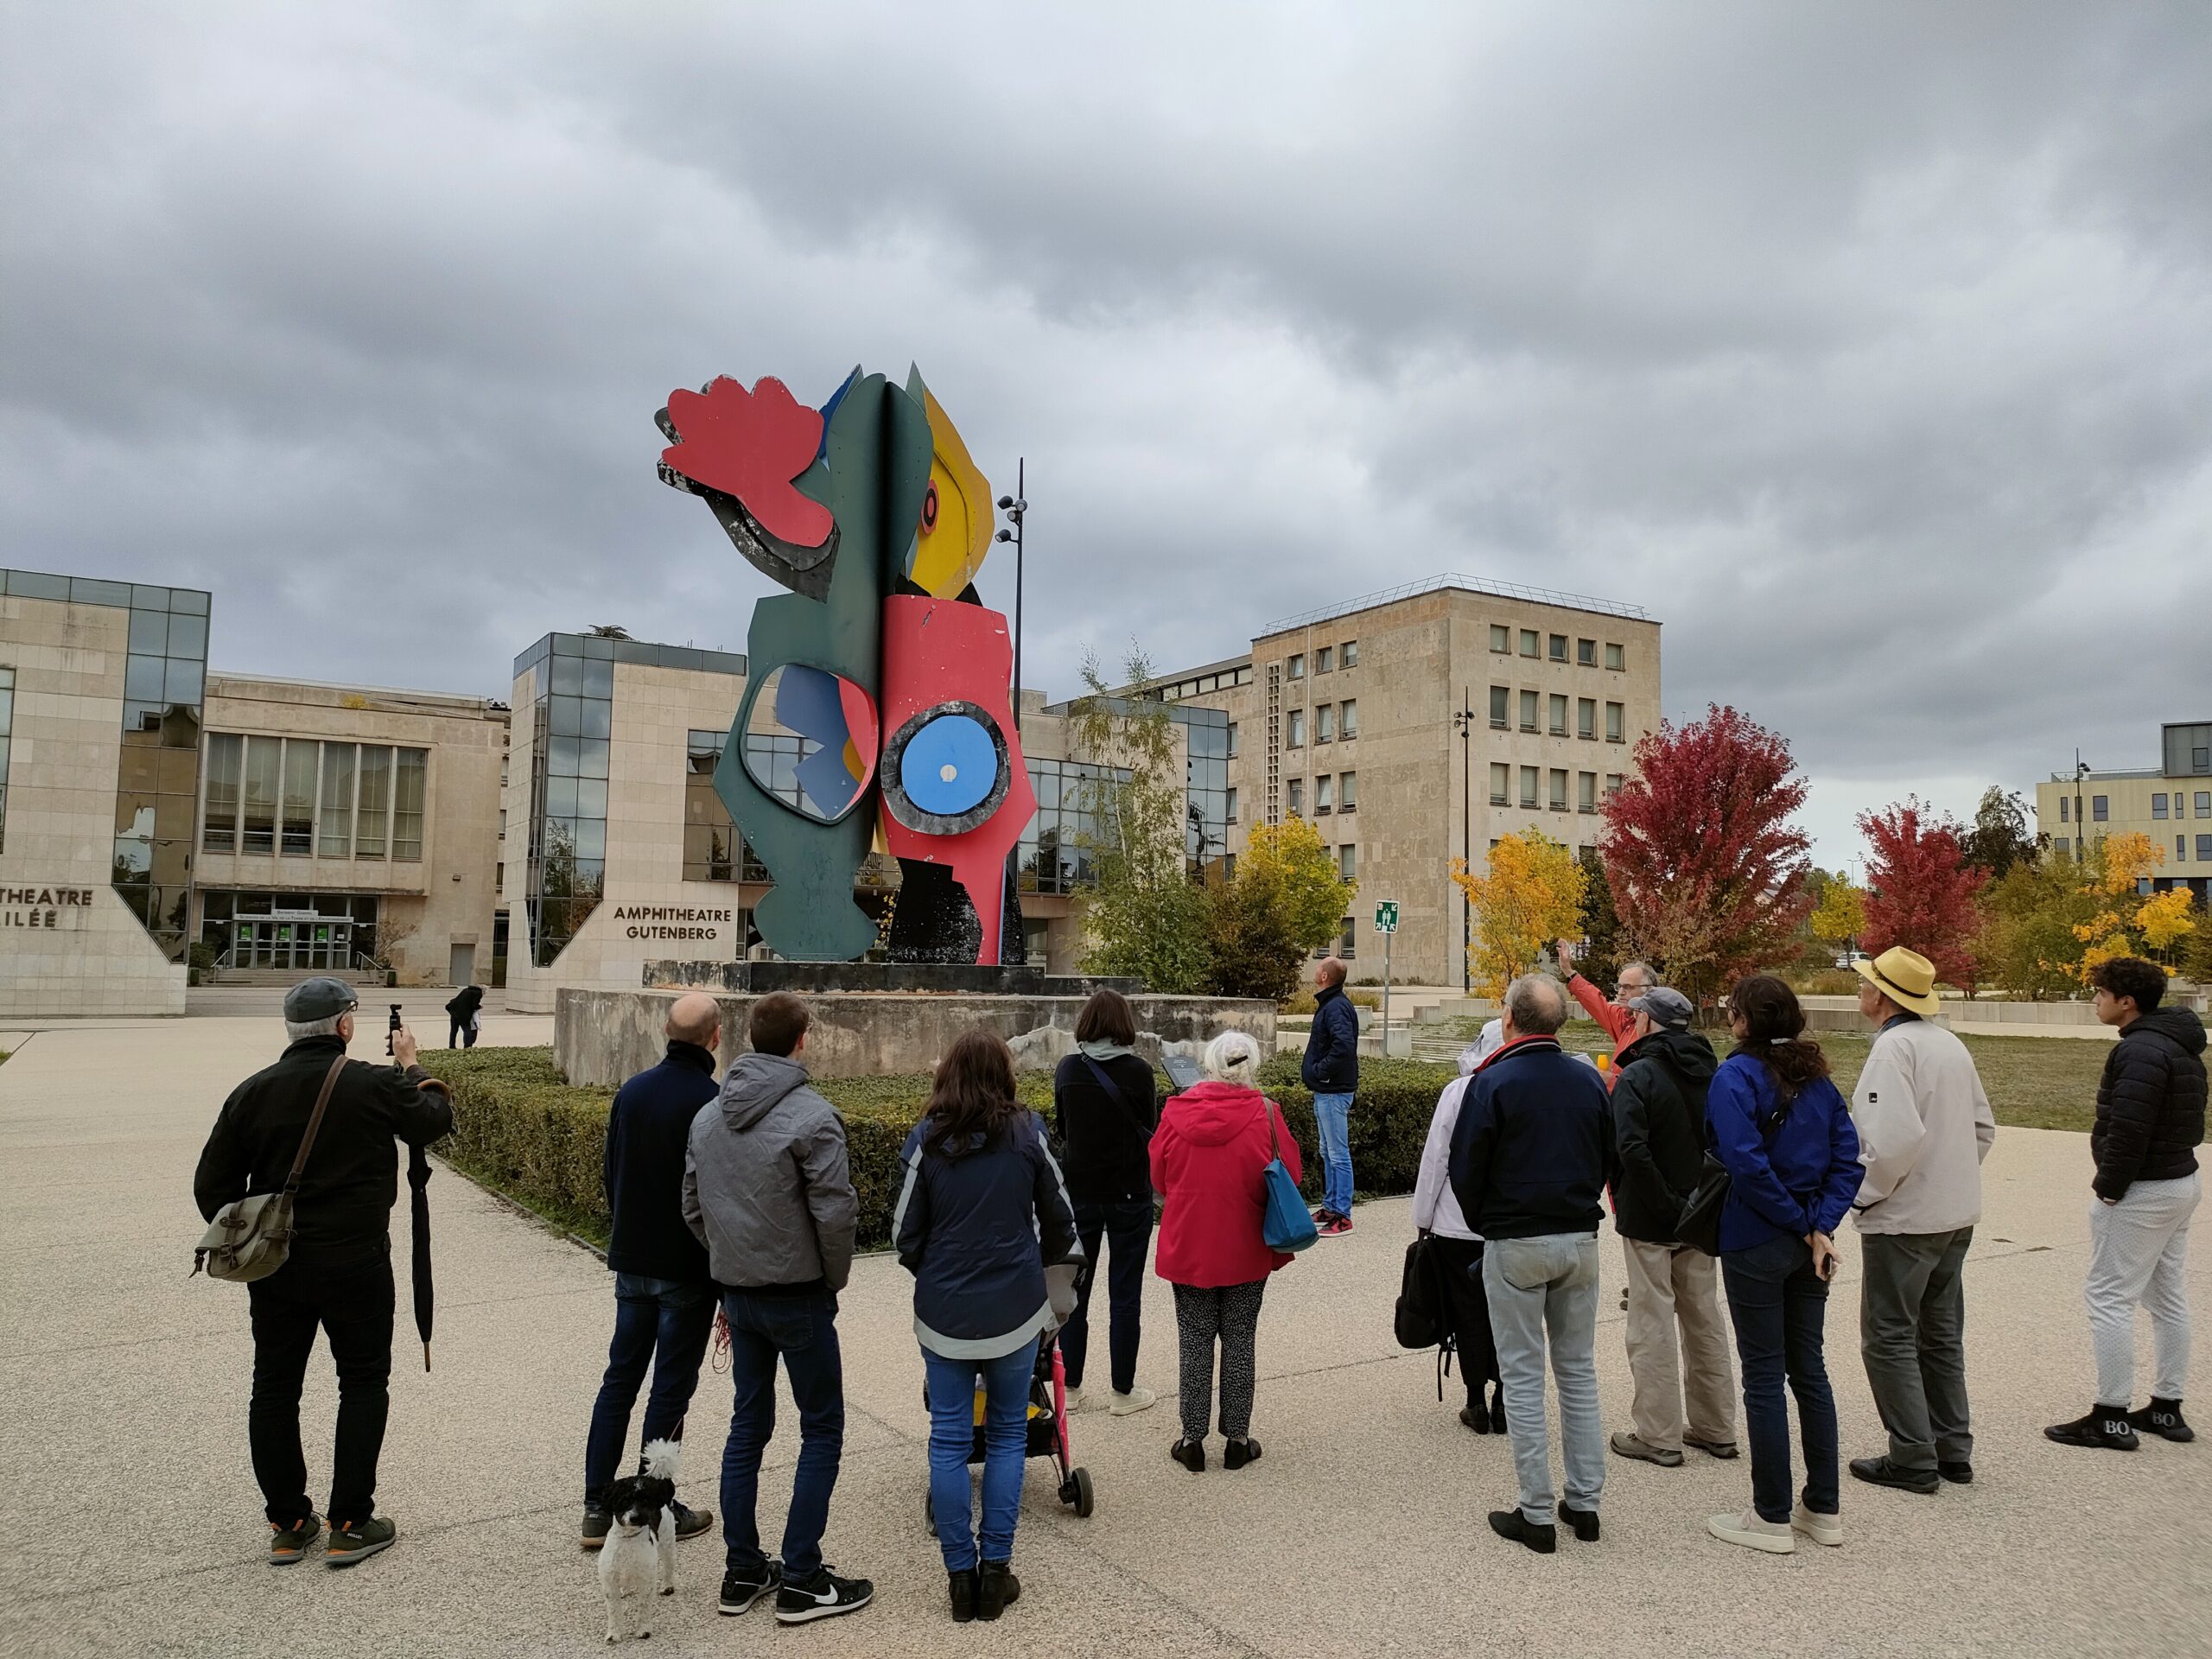 Visites urbaines de Dijon centrées sur l'urbanisme et l'architecture